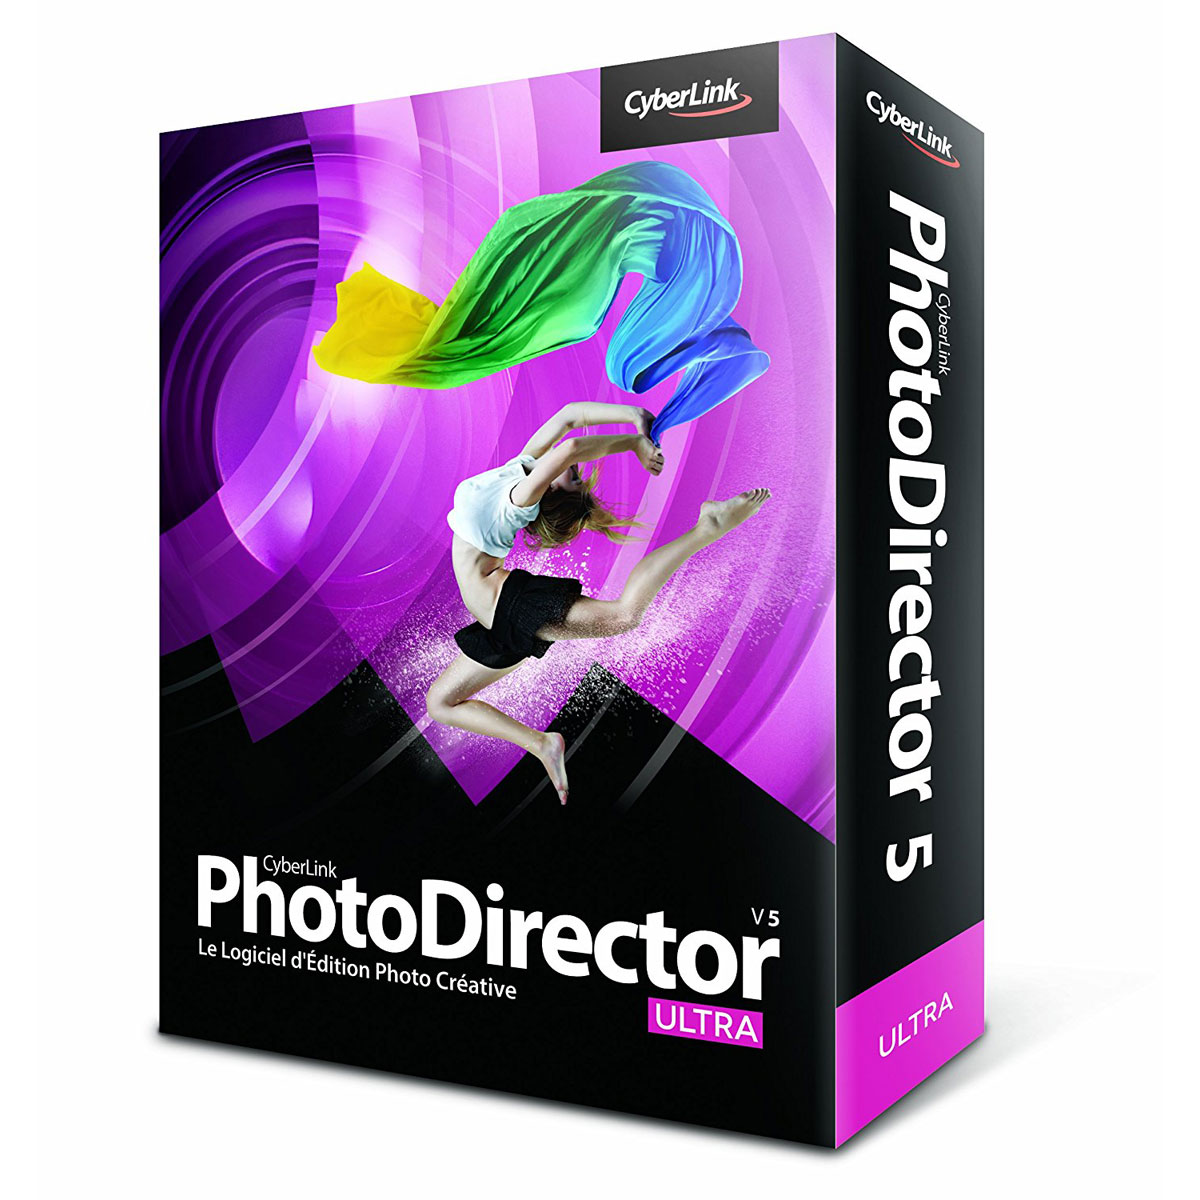 PhotoDirector 10 - CyberLink